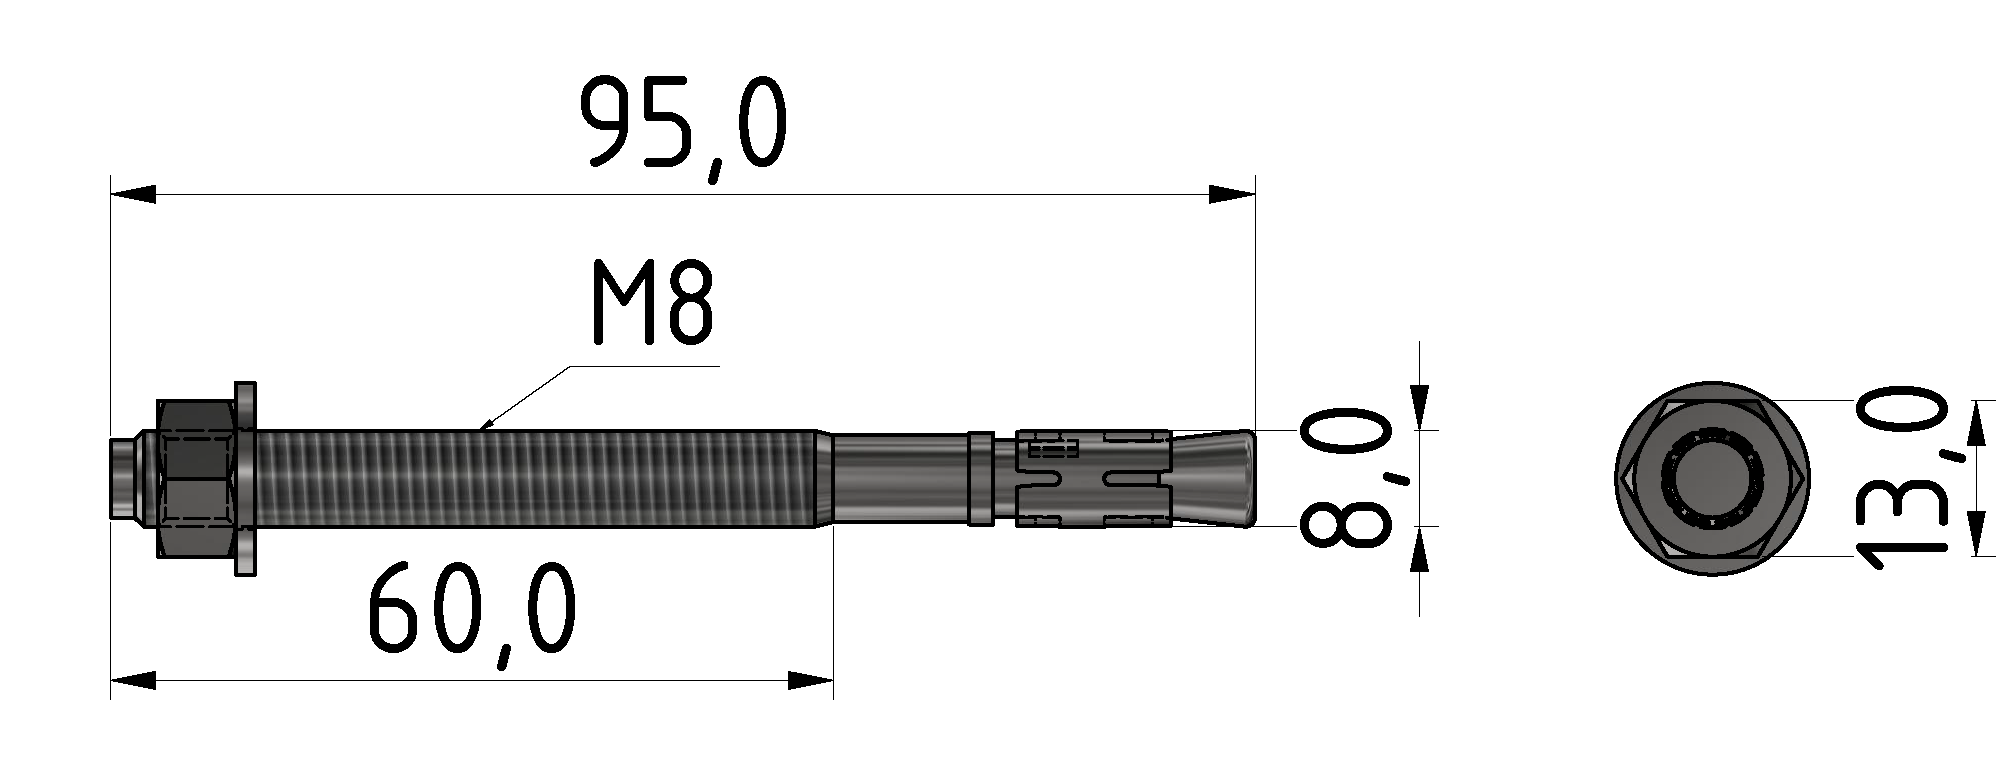 Bodenbefestigungssatz M8x95, verzinkt